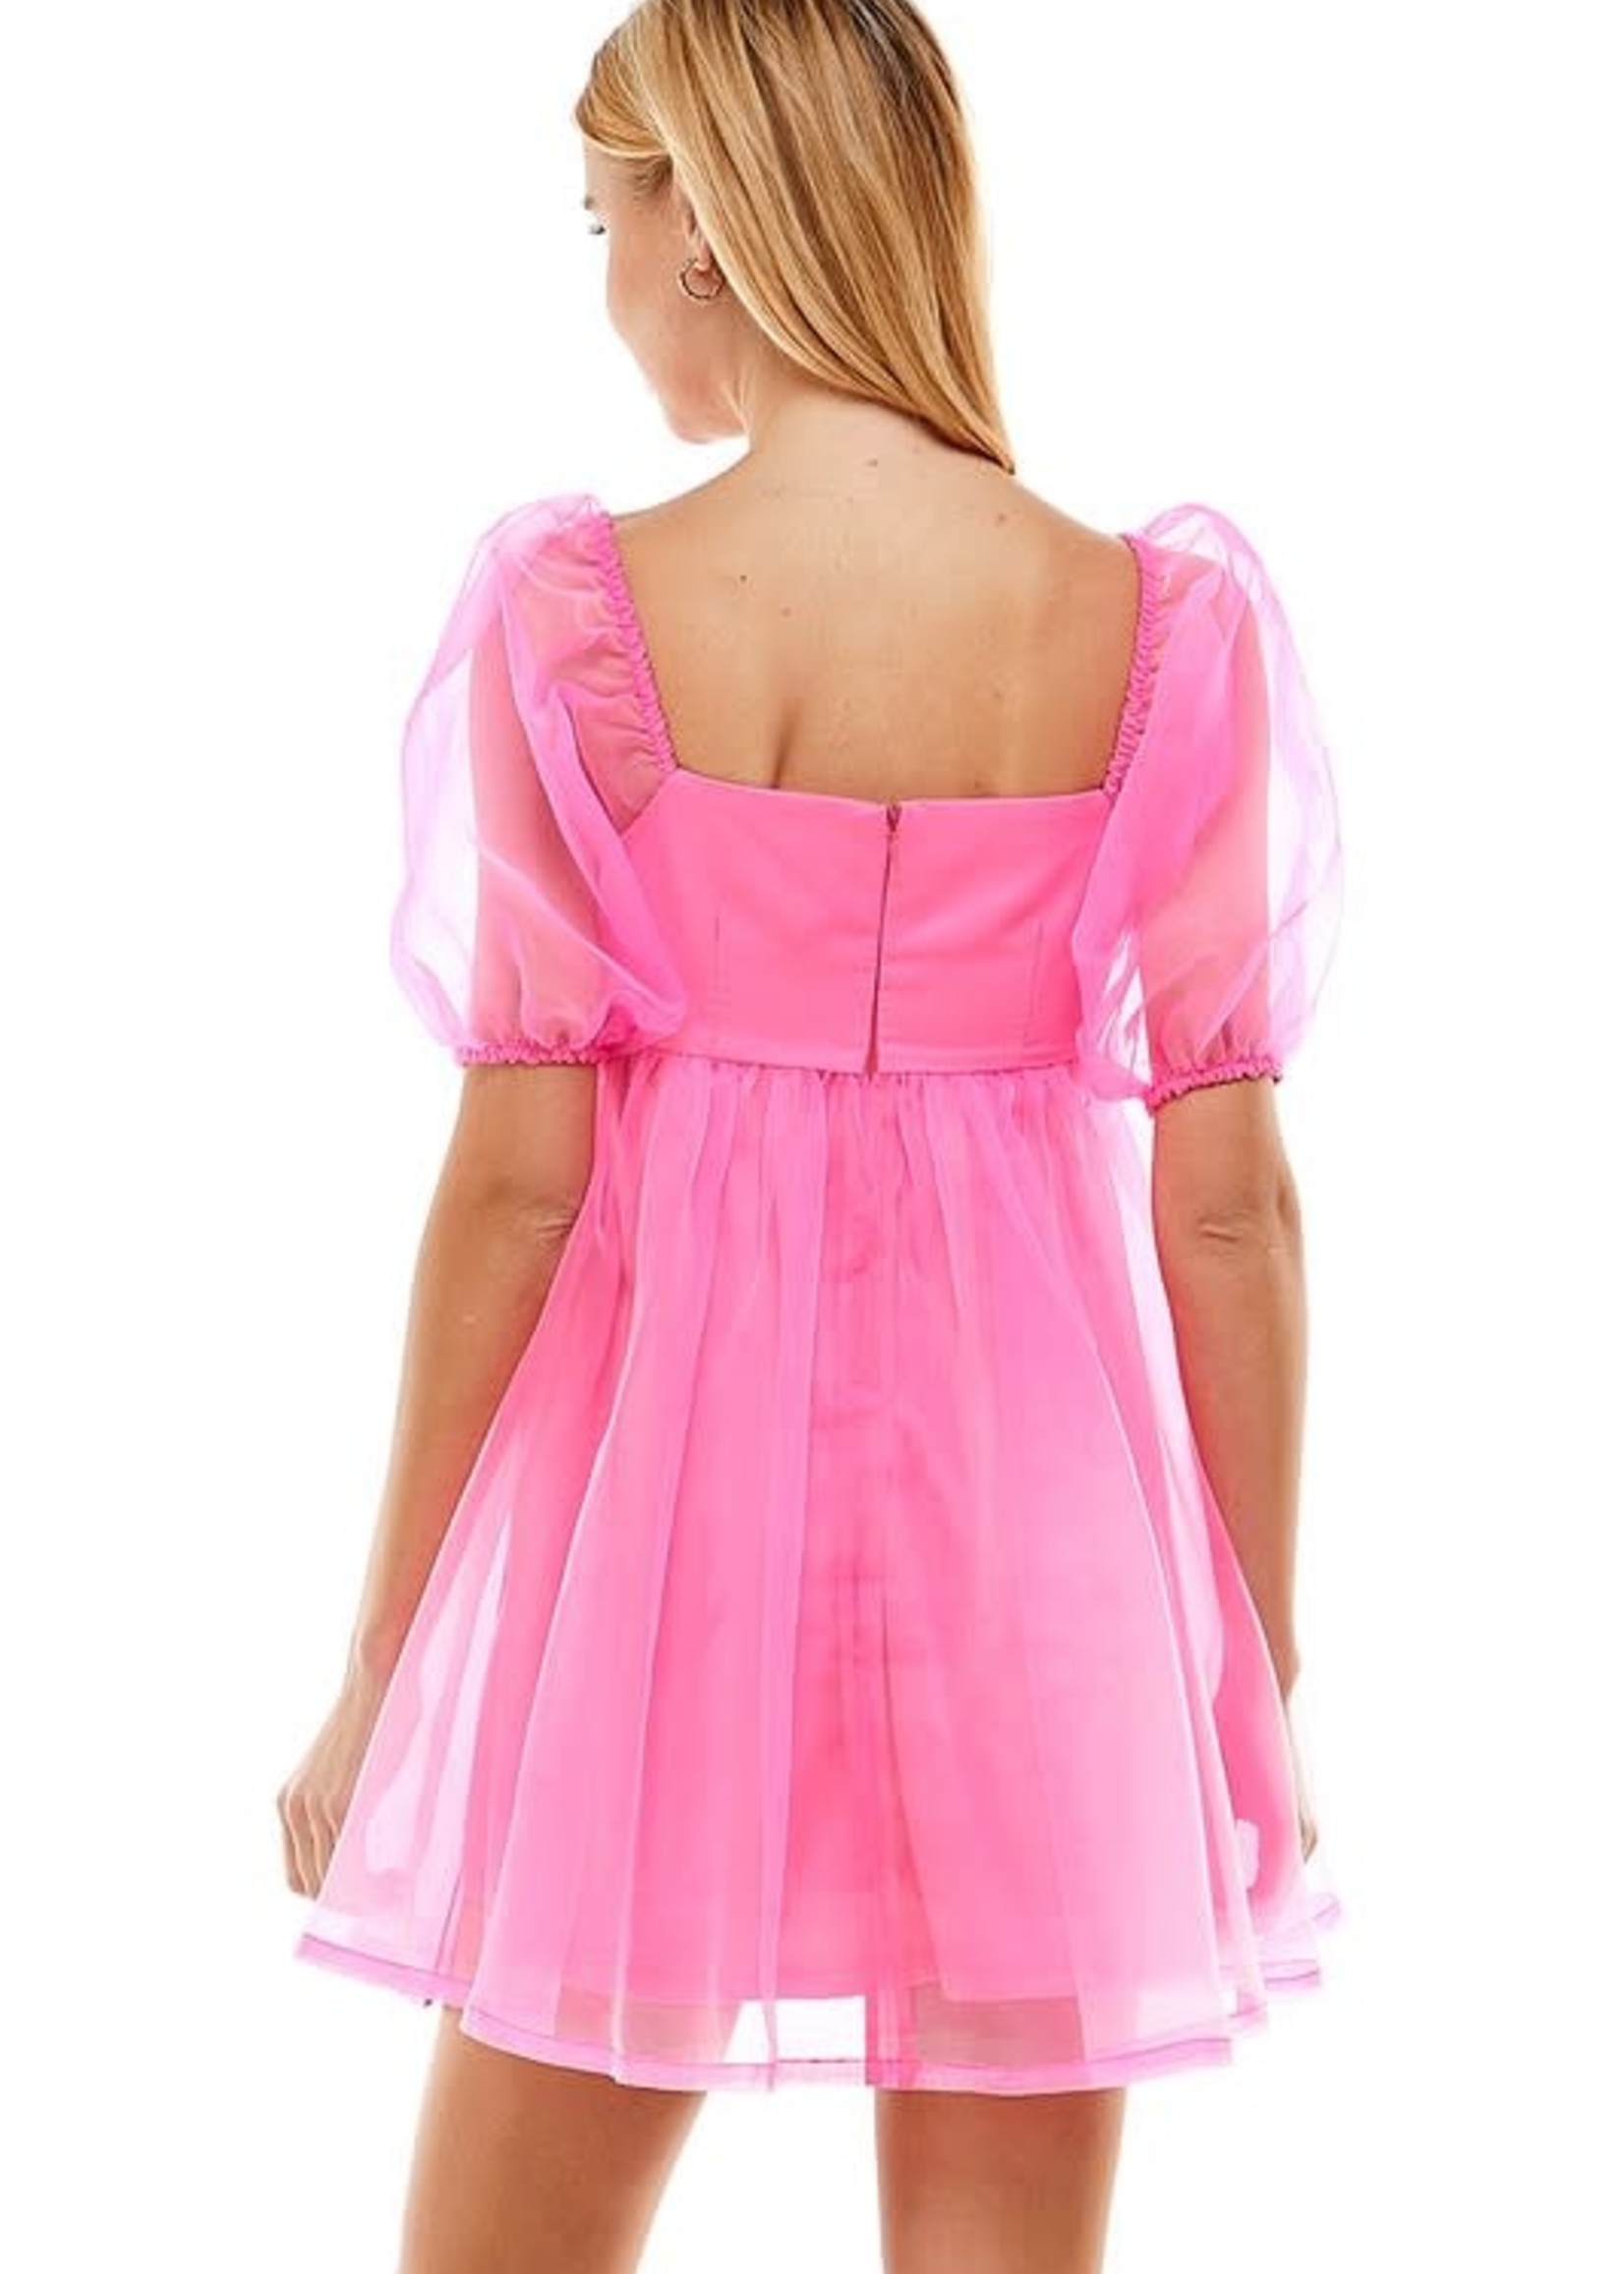 Organza Hot Pink Baby Doll Dress